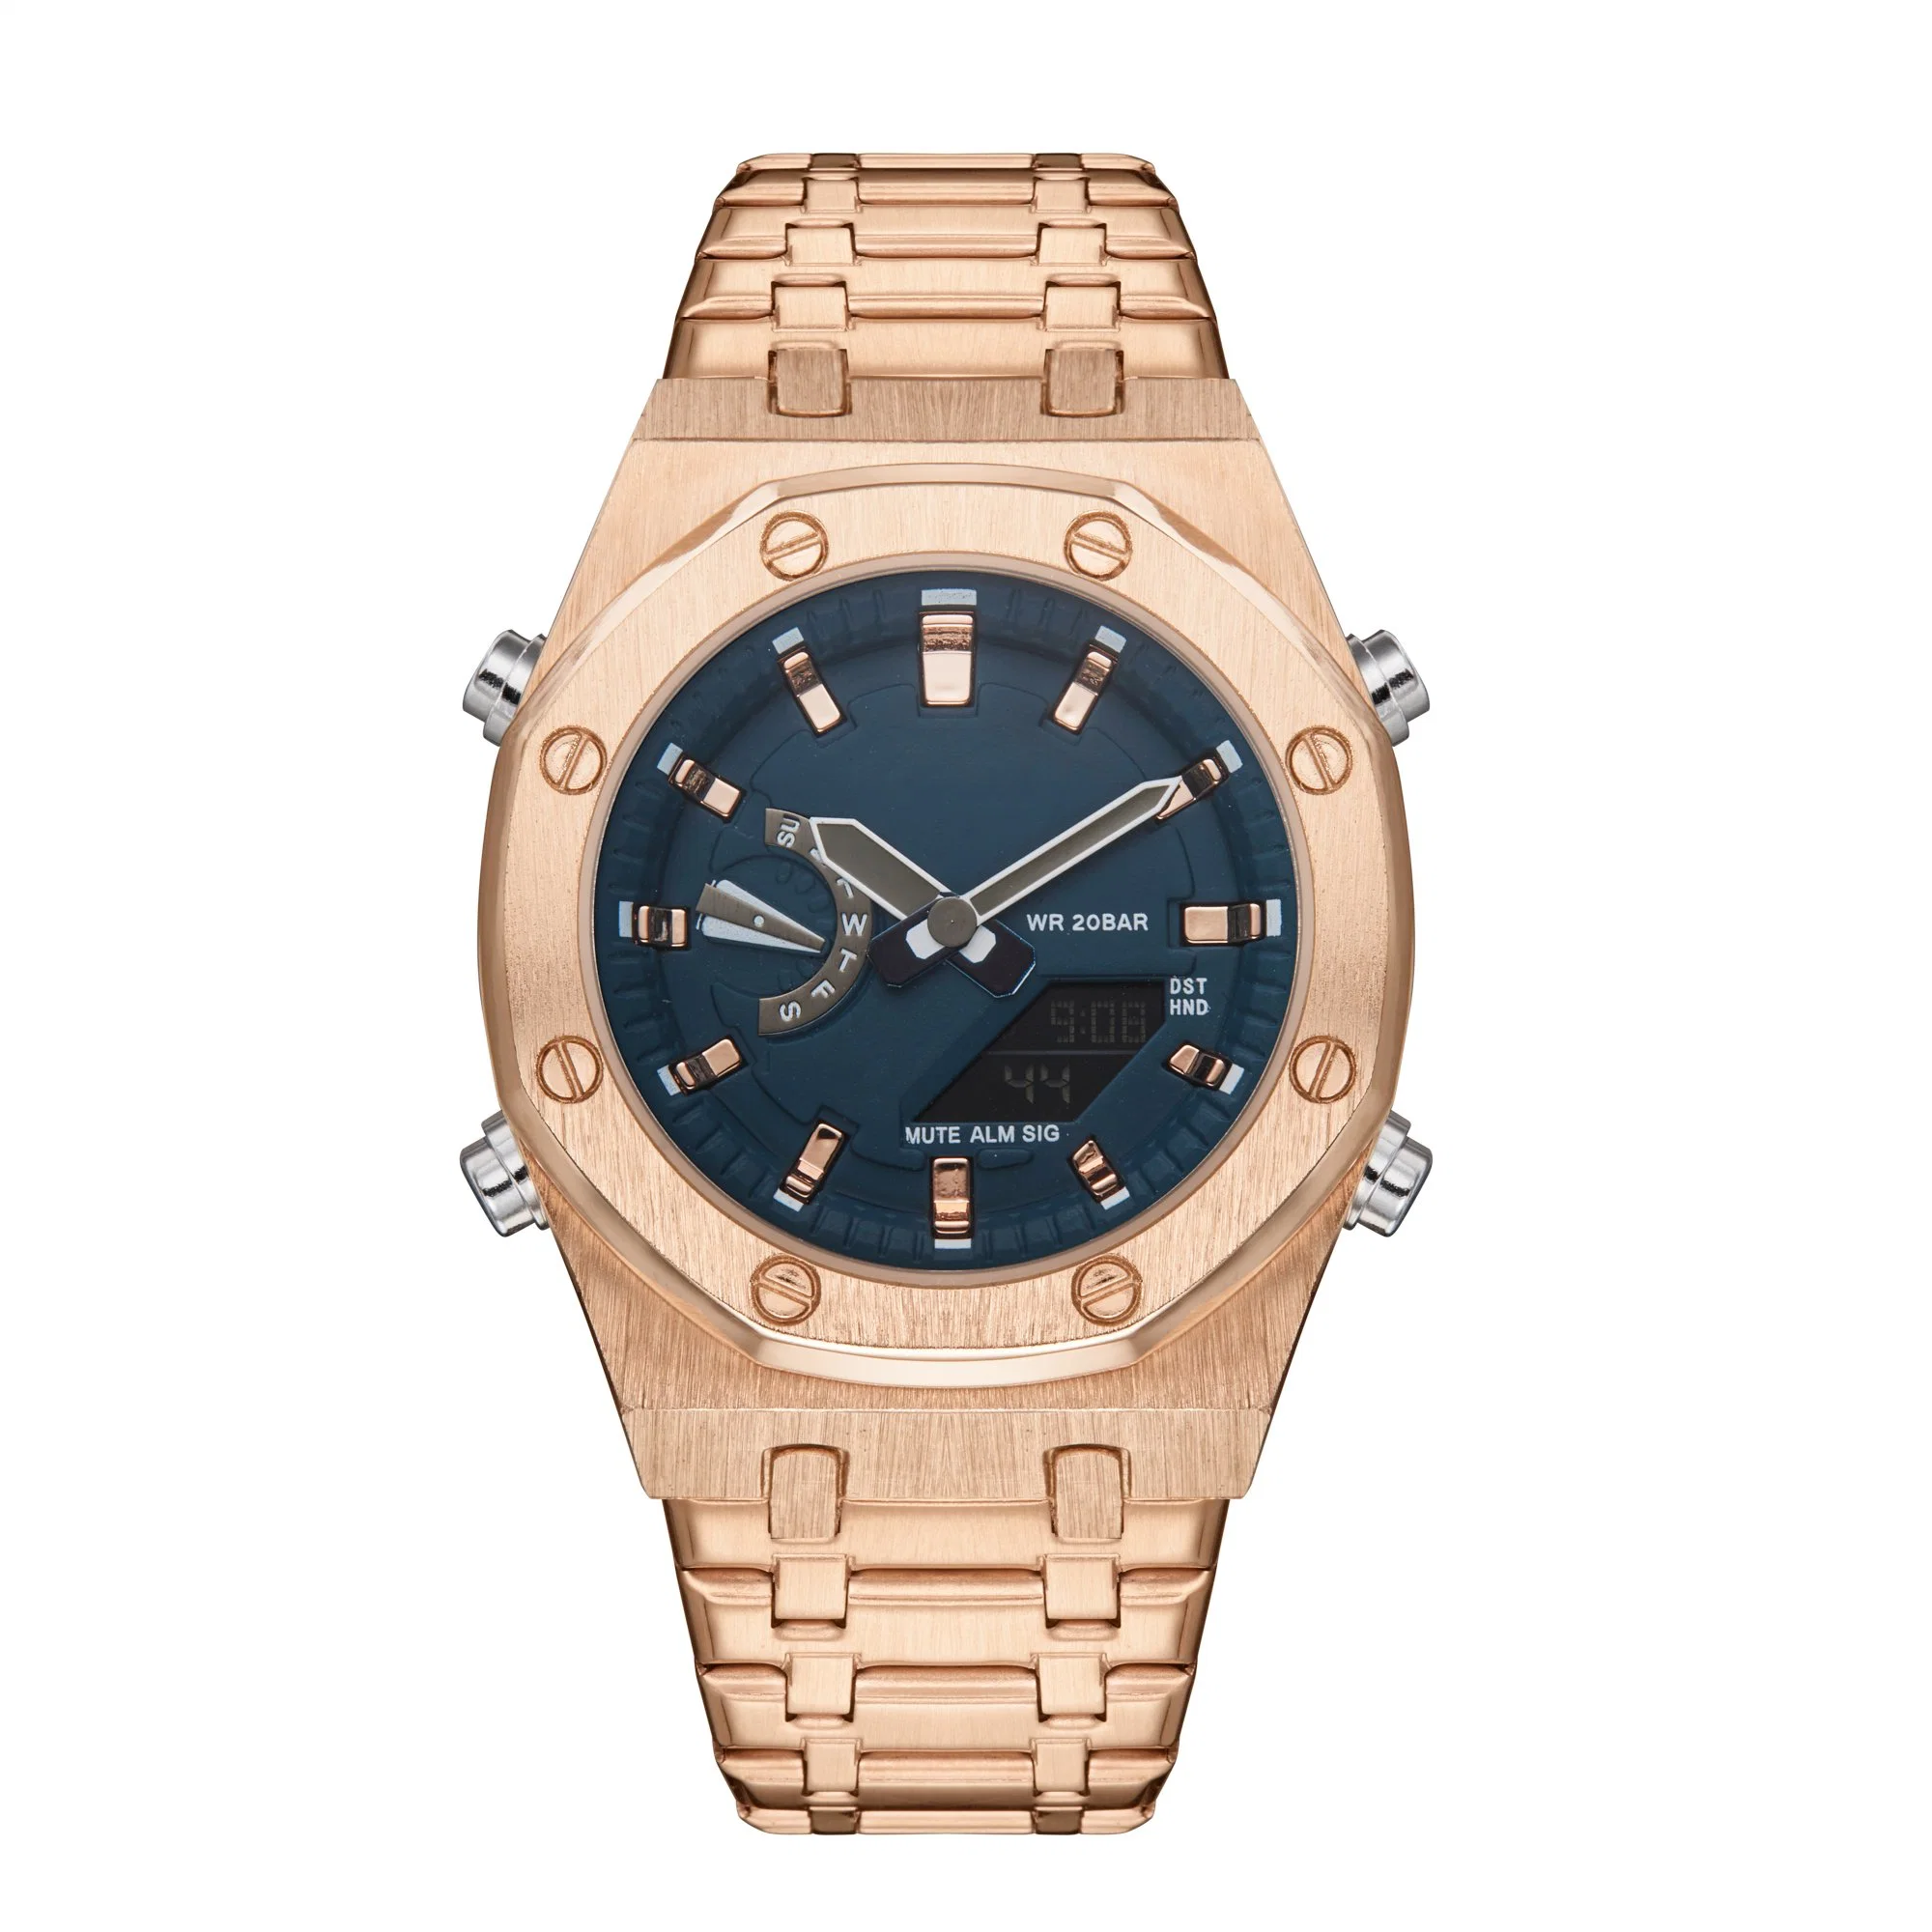 Los hombres Reloj Digital Pulsera Reloj reloj deportivo para regalo reloj reloj de cuarzo Fashion de acero inoxidable Reloj analógico reloj reloj digital